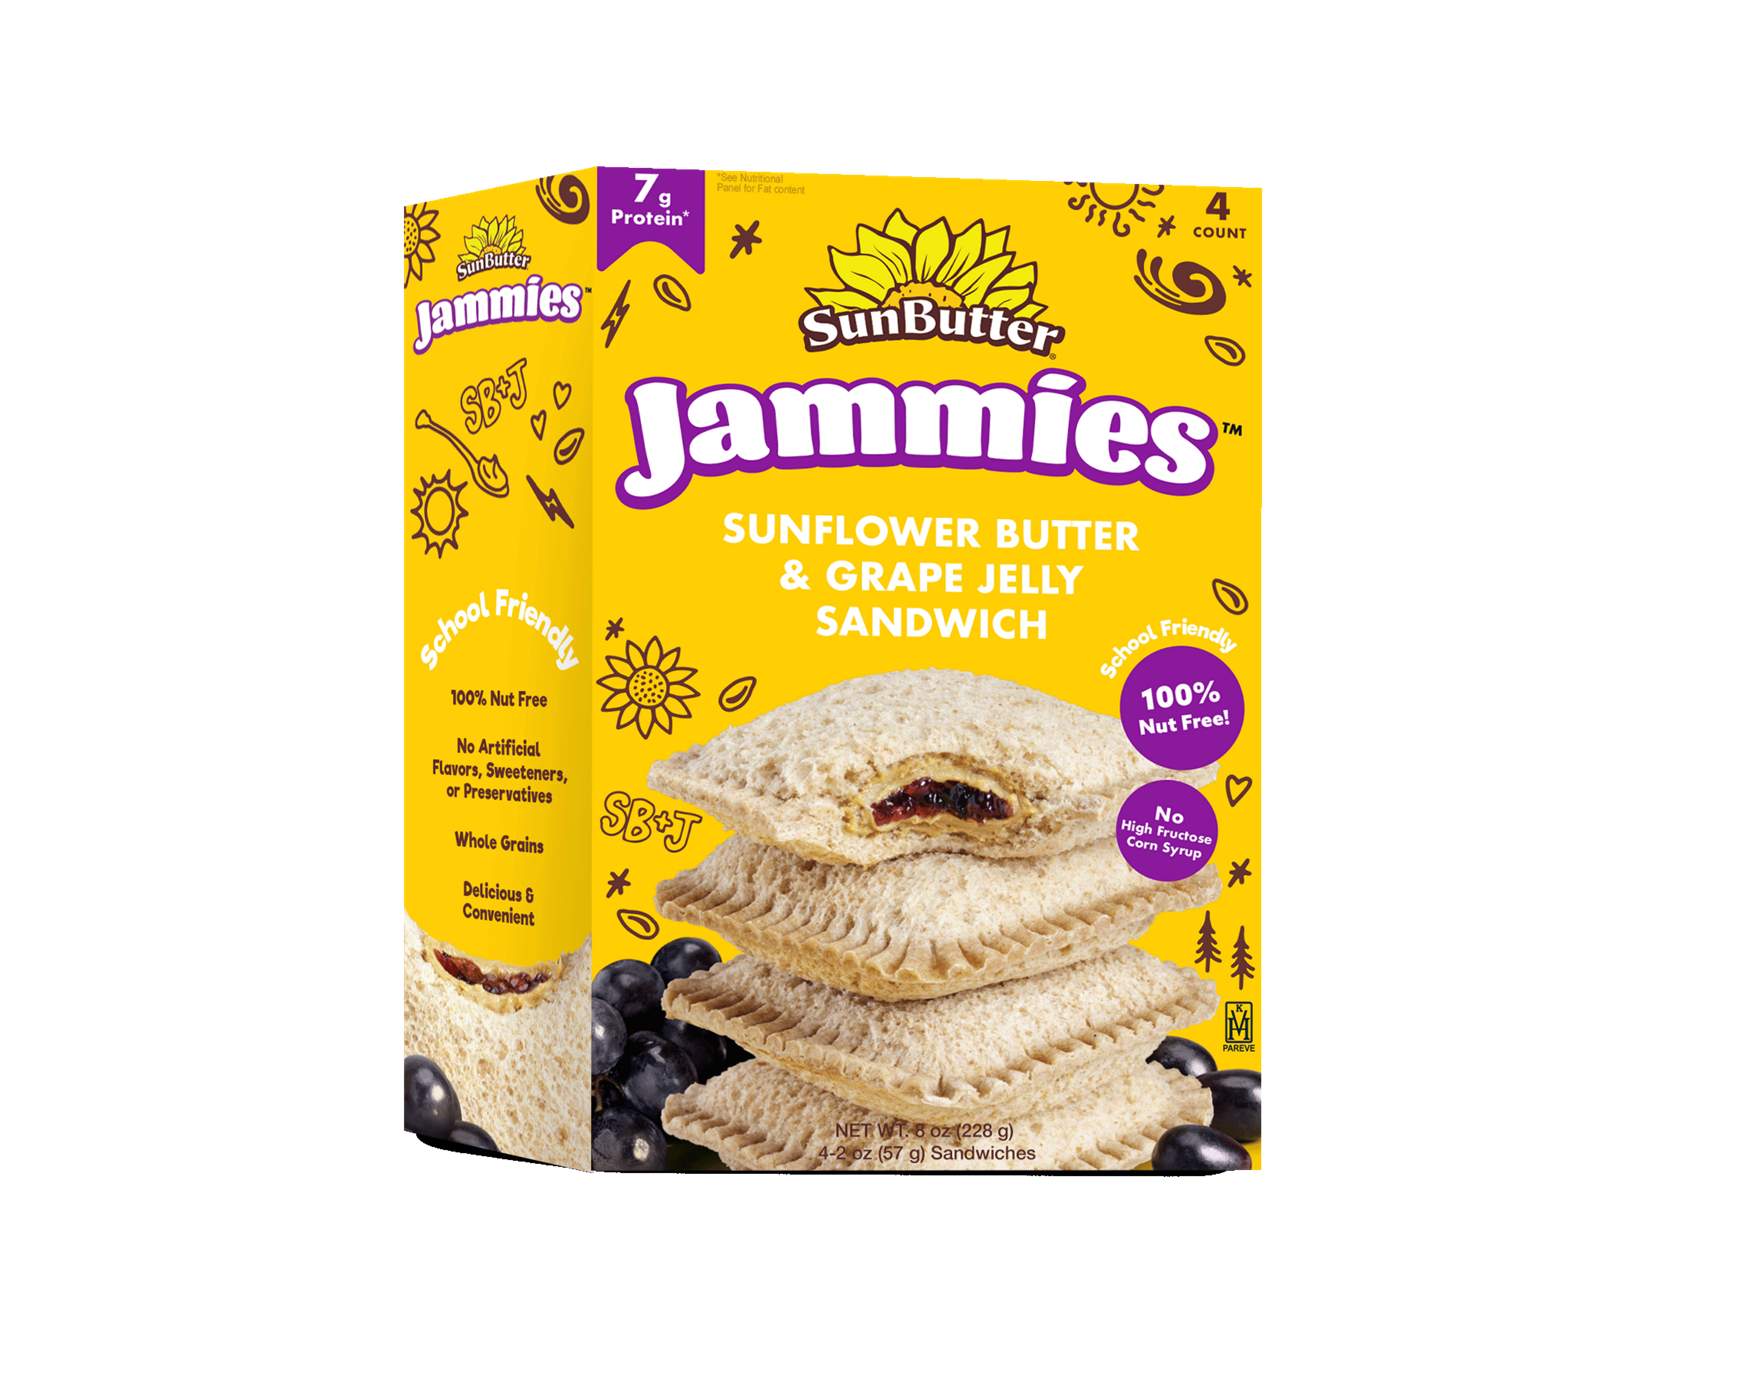 SunButter Jammies Frozen Sandwiches - Sunflower Butter & Grape Jelly; image 4 of 7